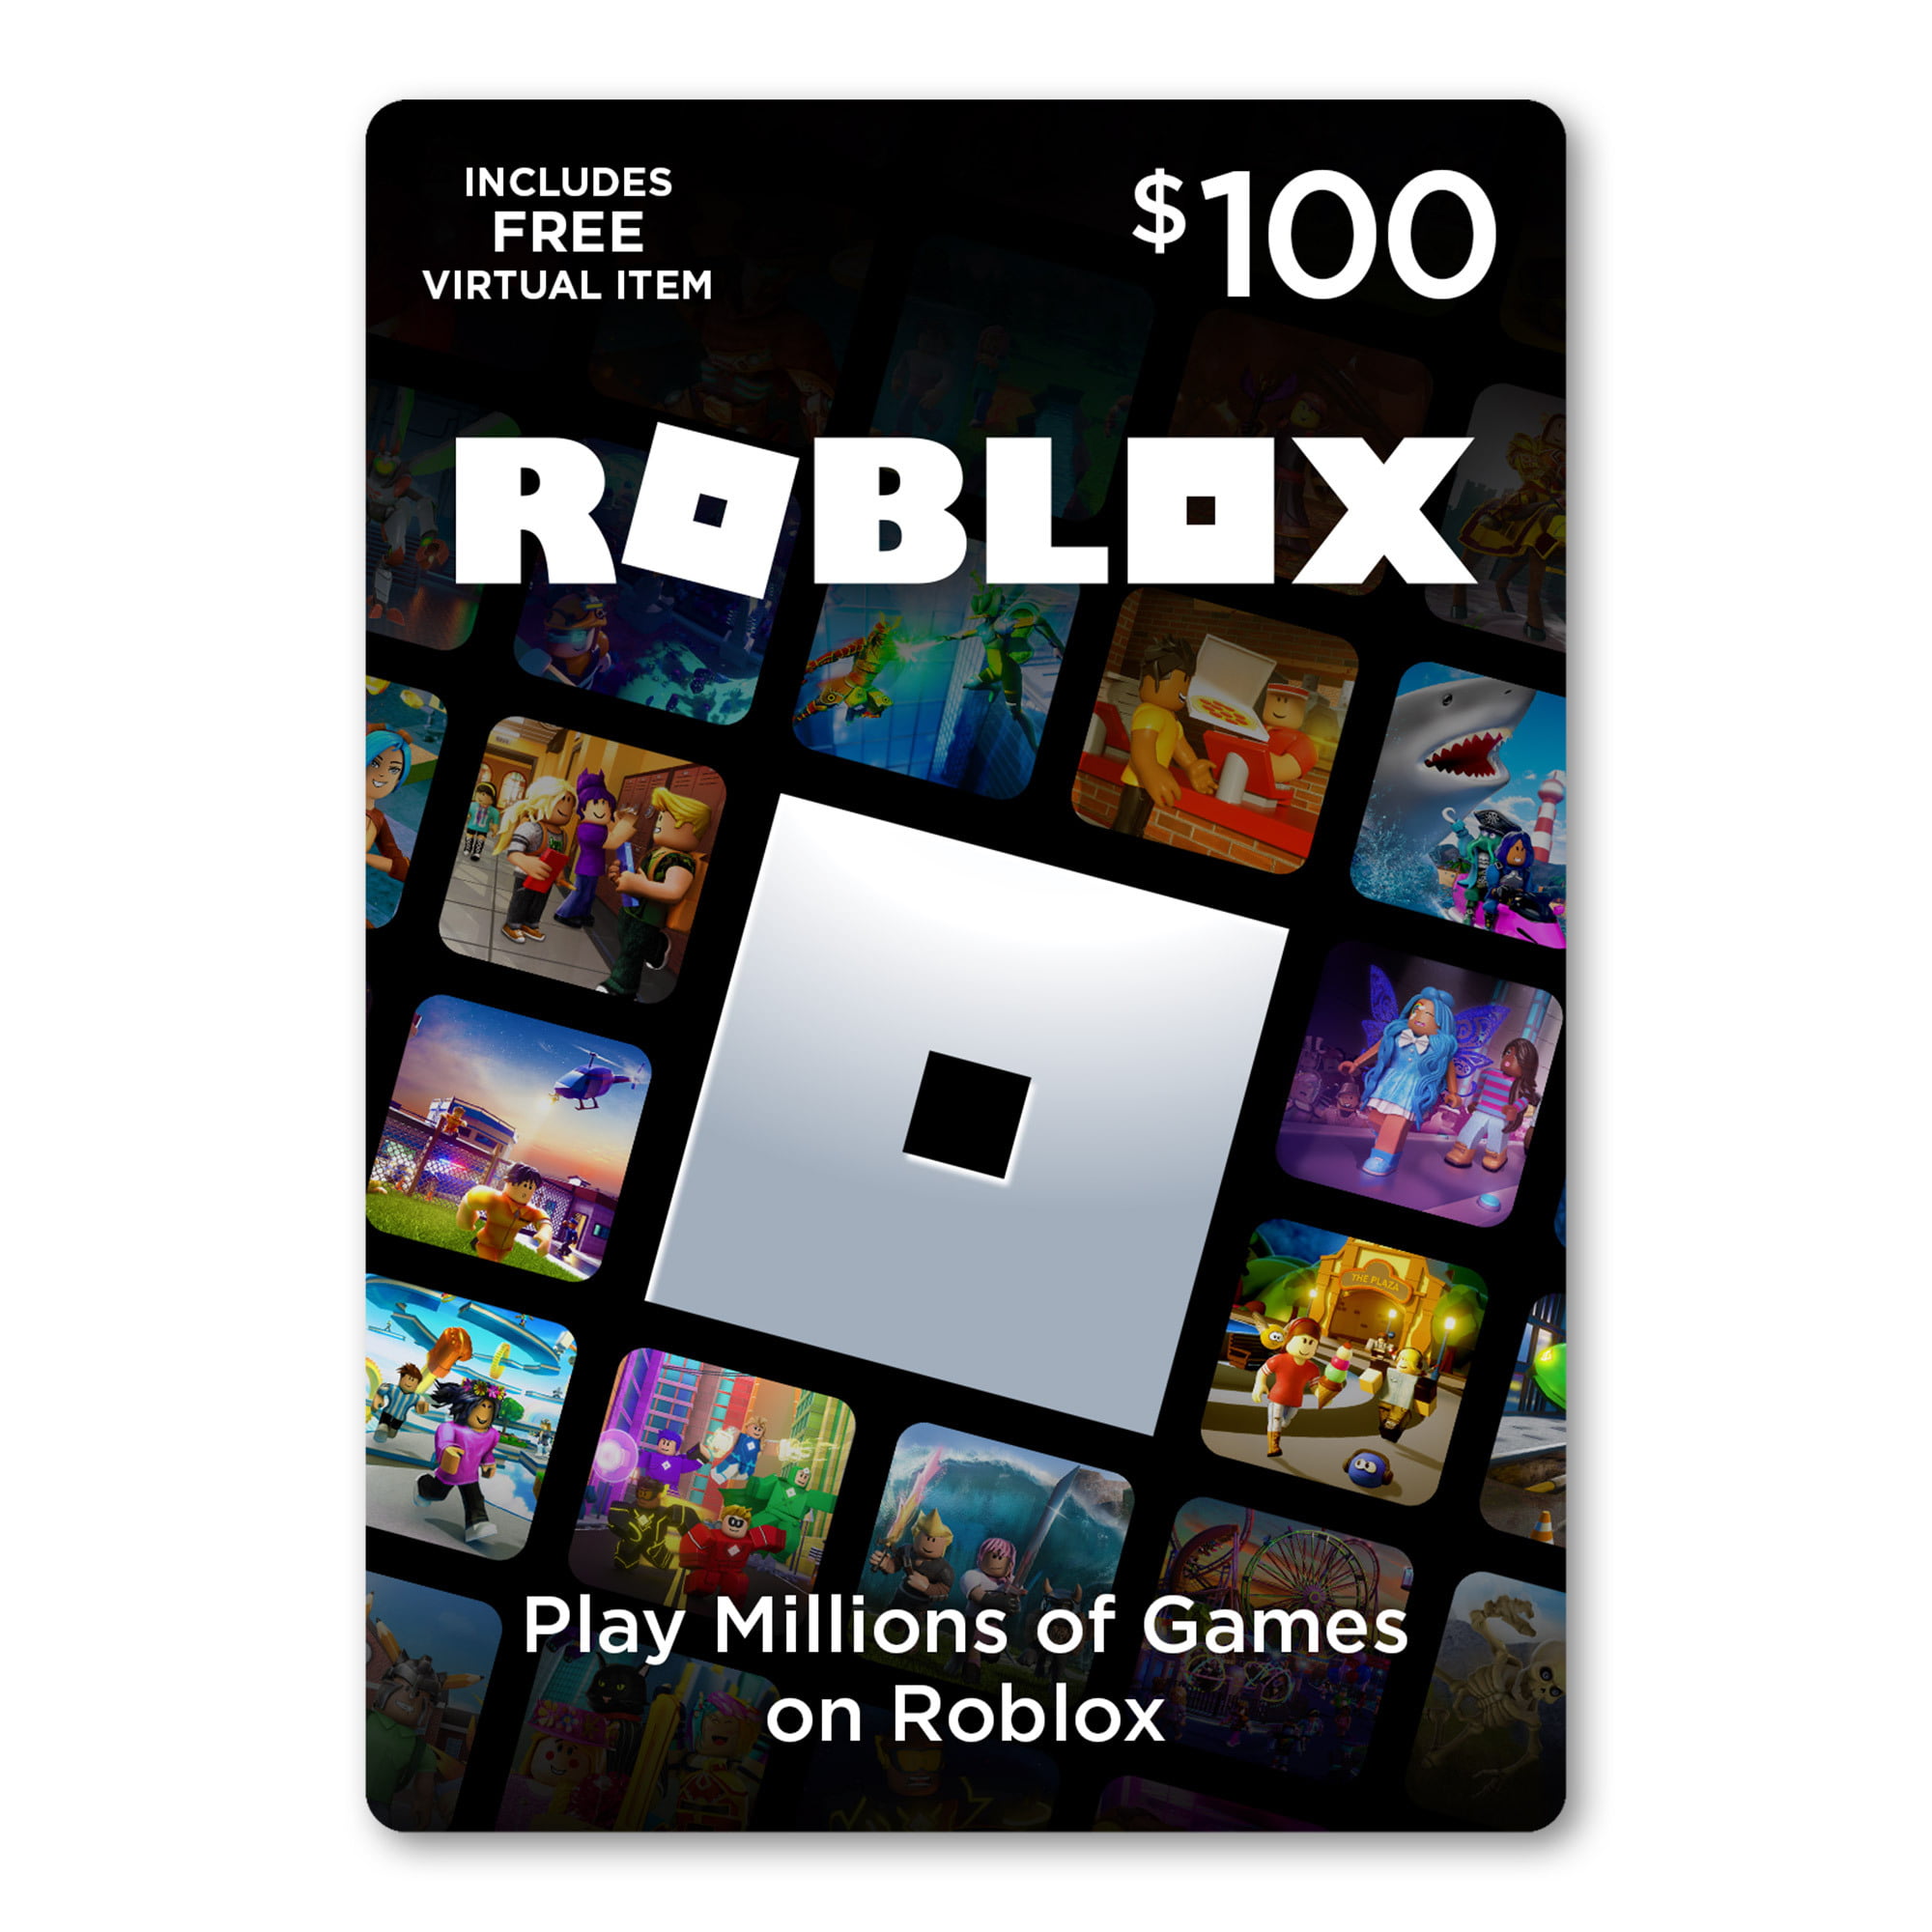 Roblox 100 Digital Gift Card Includes Exclusive Virtual Item Digital Download Walmart Com Walmart Com - robux 100